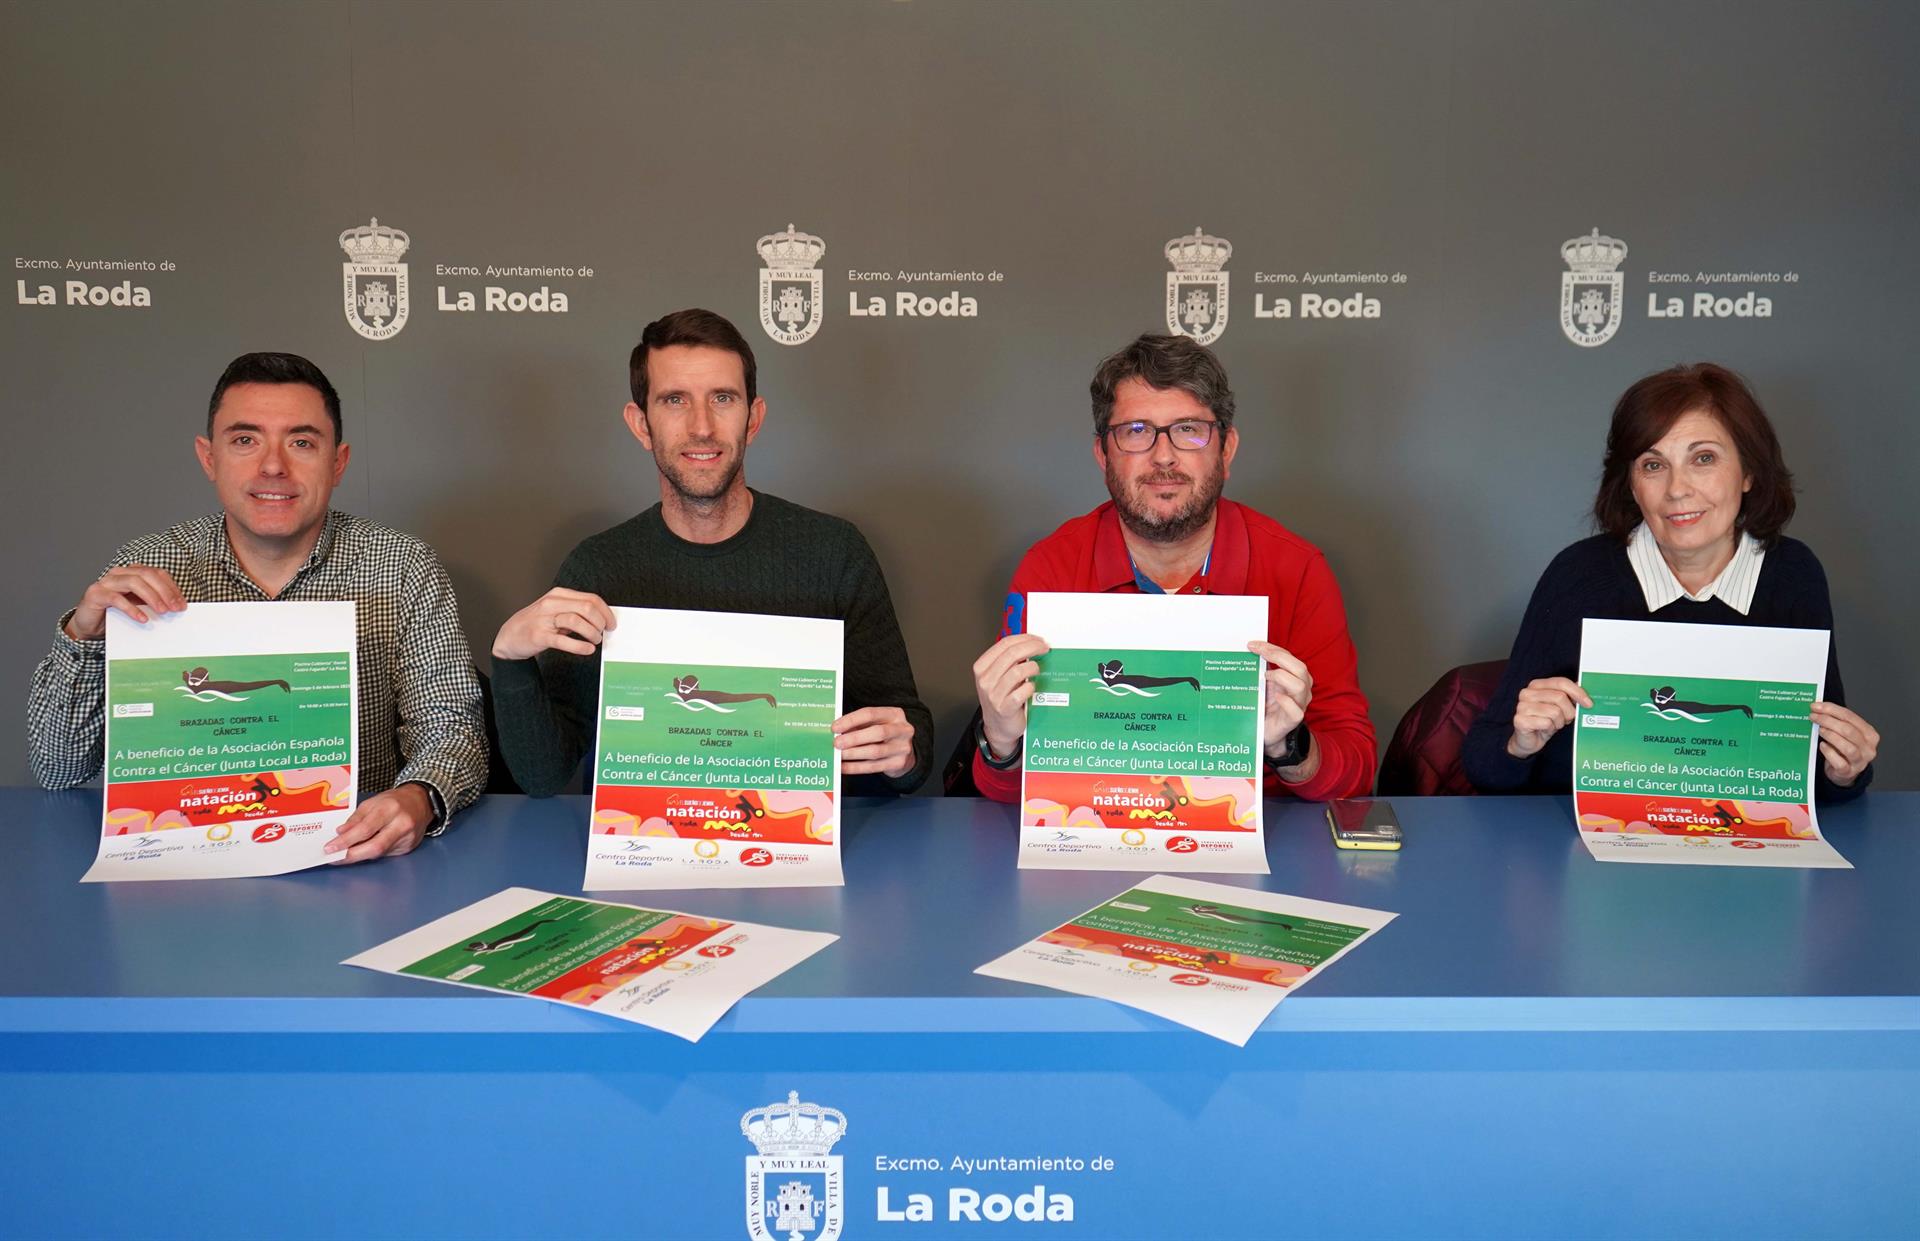 Presentan la nueva edición de la iniciativa solidaria "Brazadas contra el cáncer" en el Ayuntamiento de La Roda, Albacete.